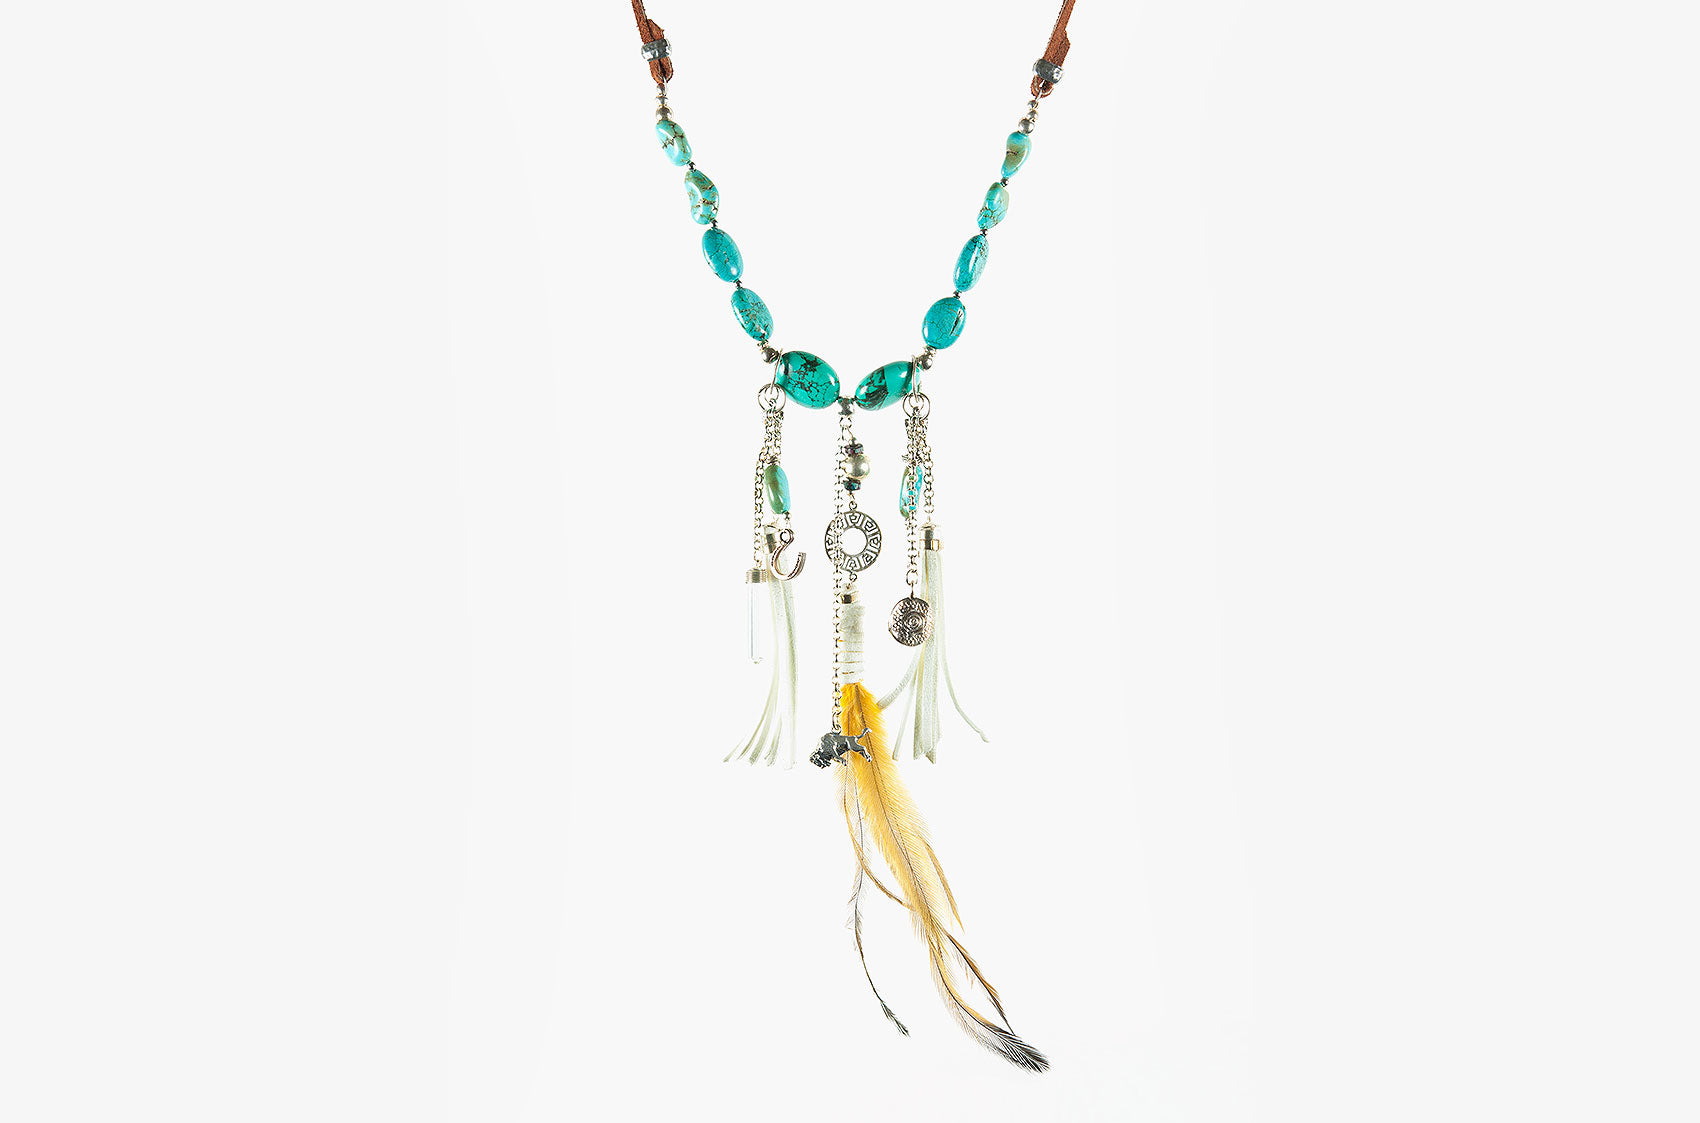 Buffalo Girl Spirit Dreamer boho necklace for festival and street wear